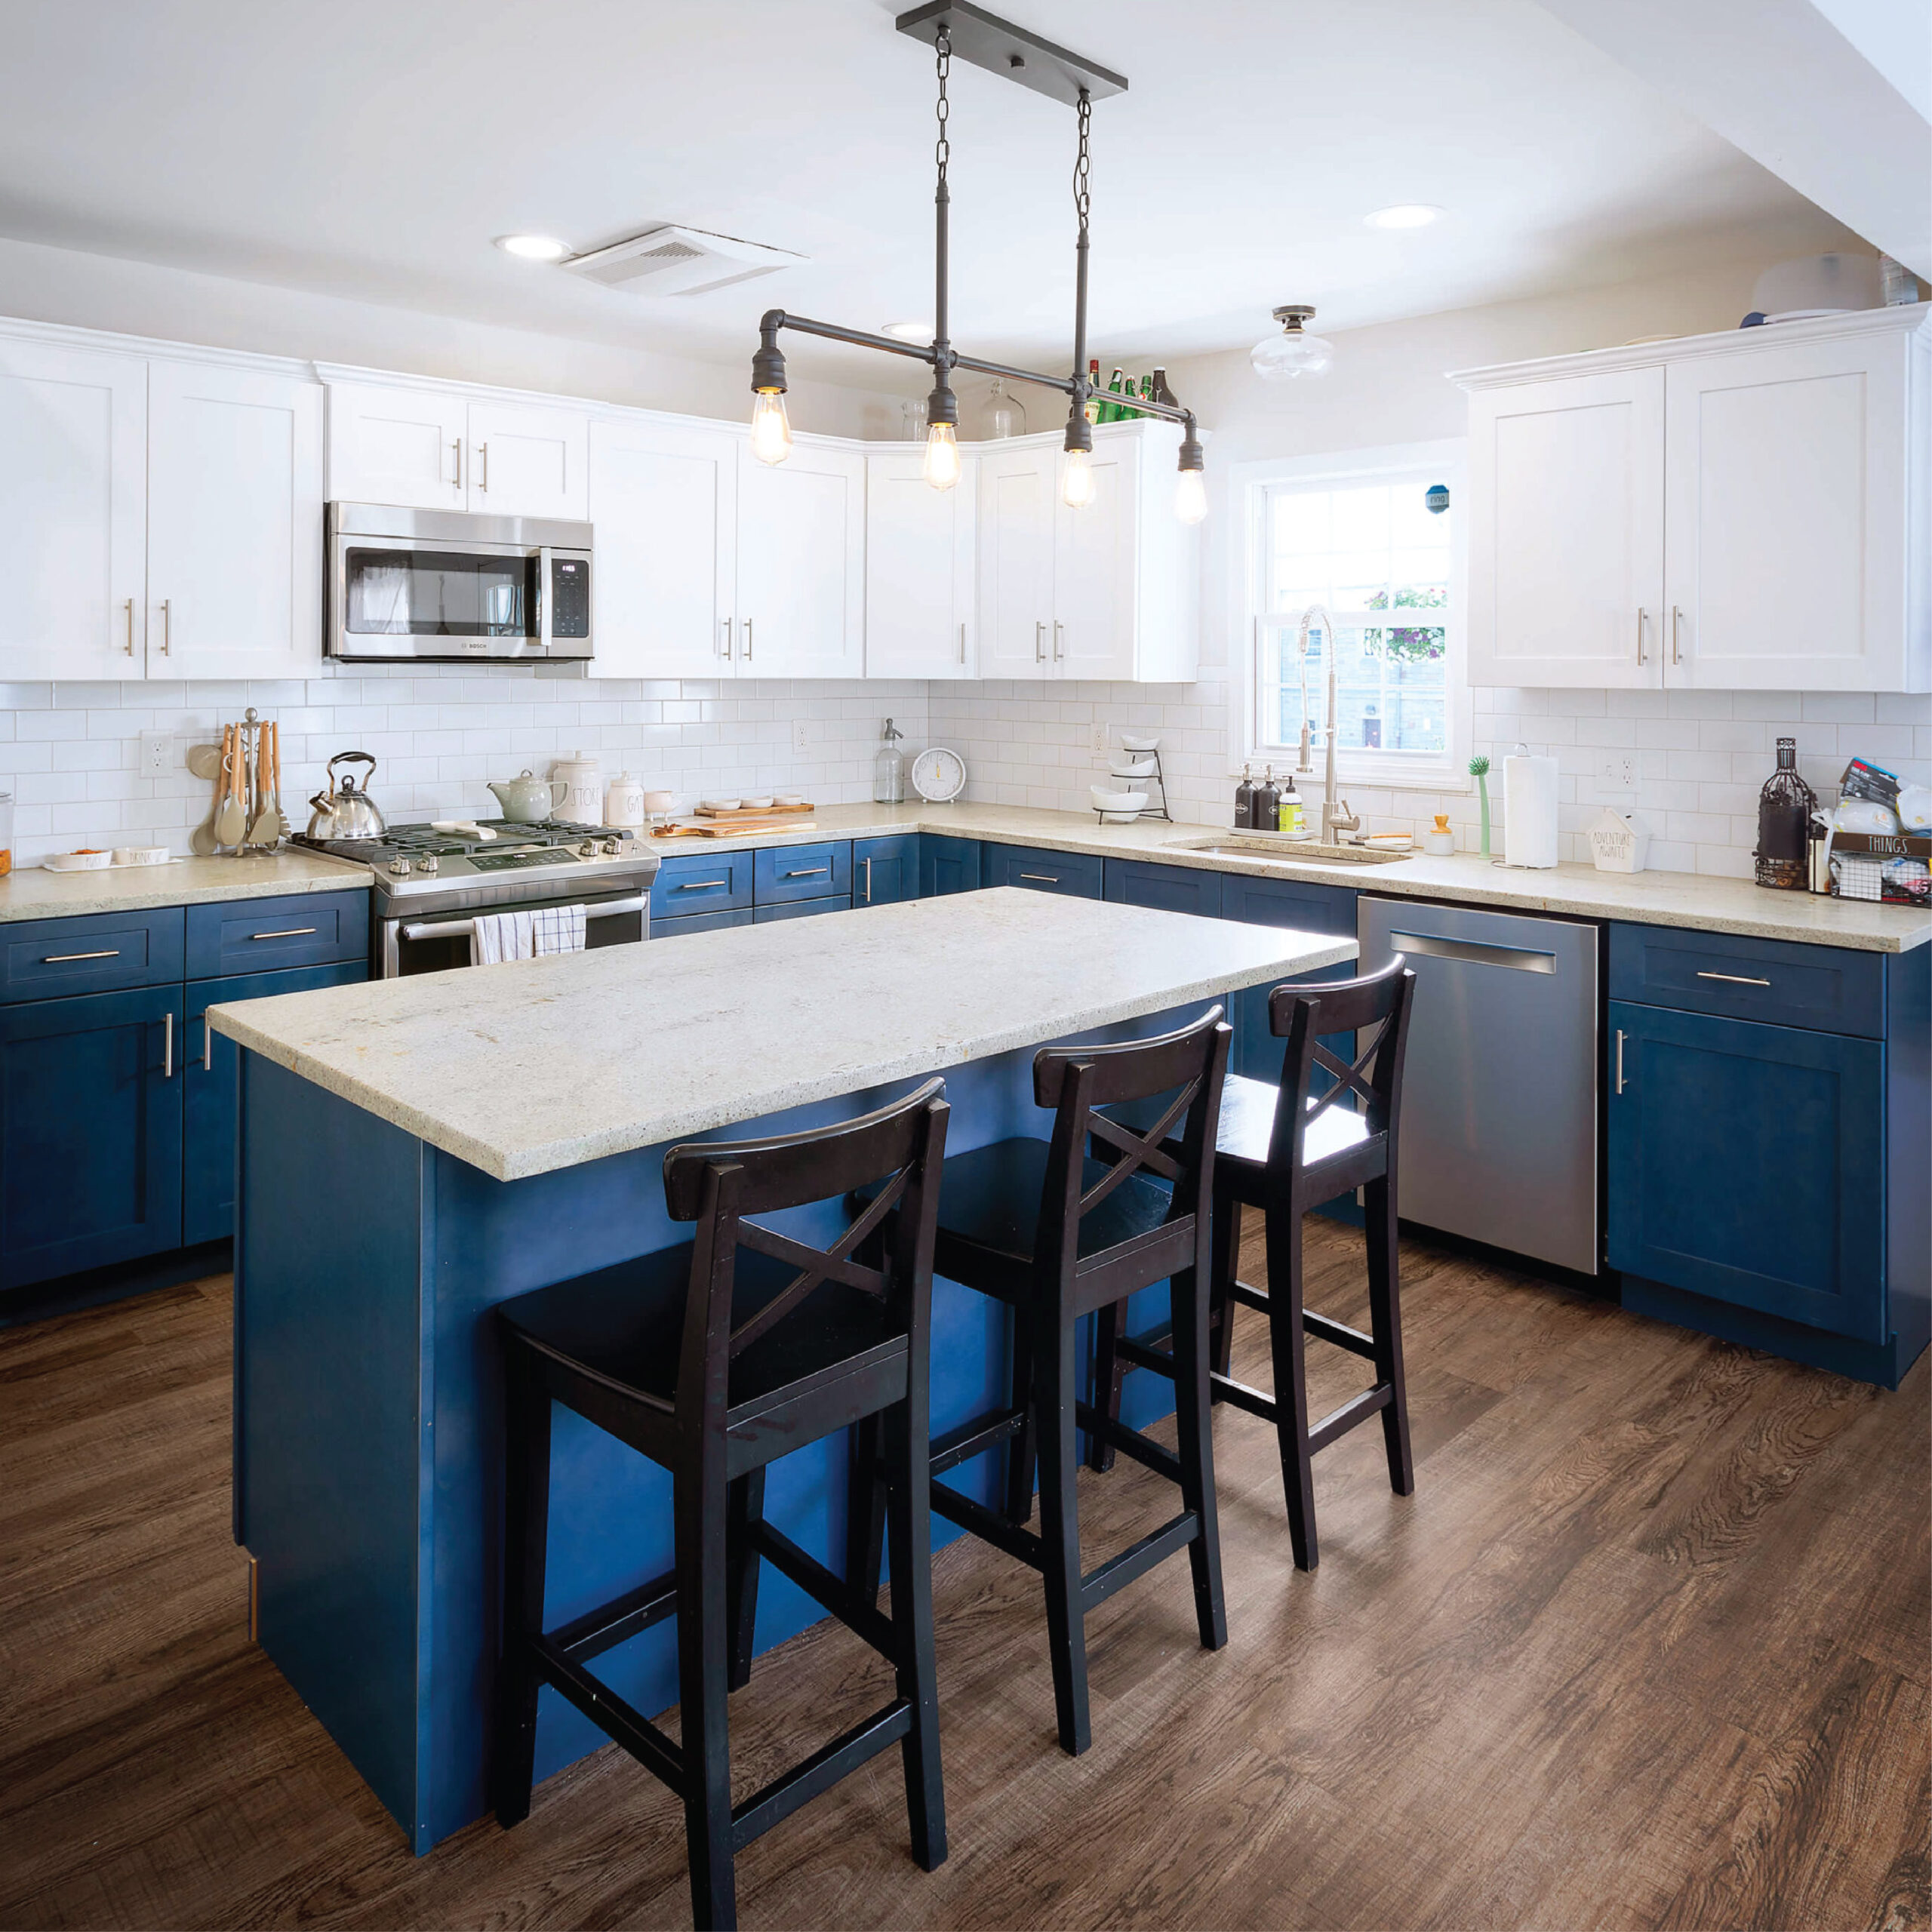 CNC White and blue Kitchen Design